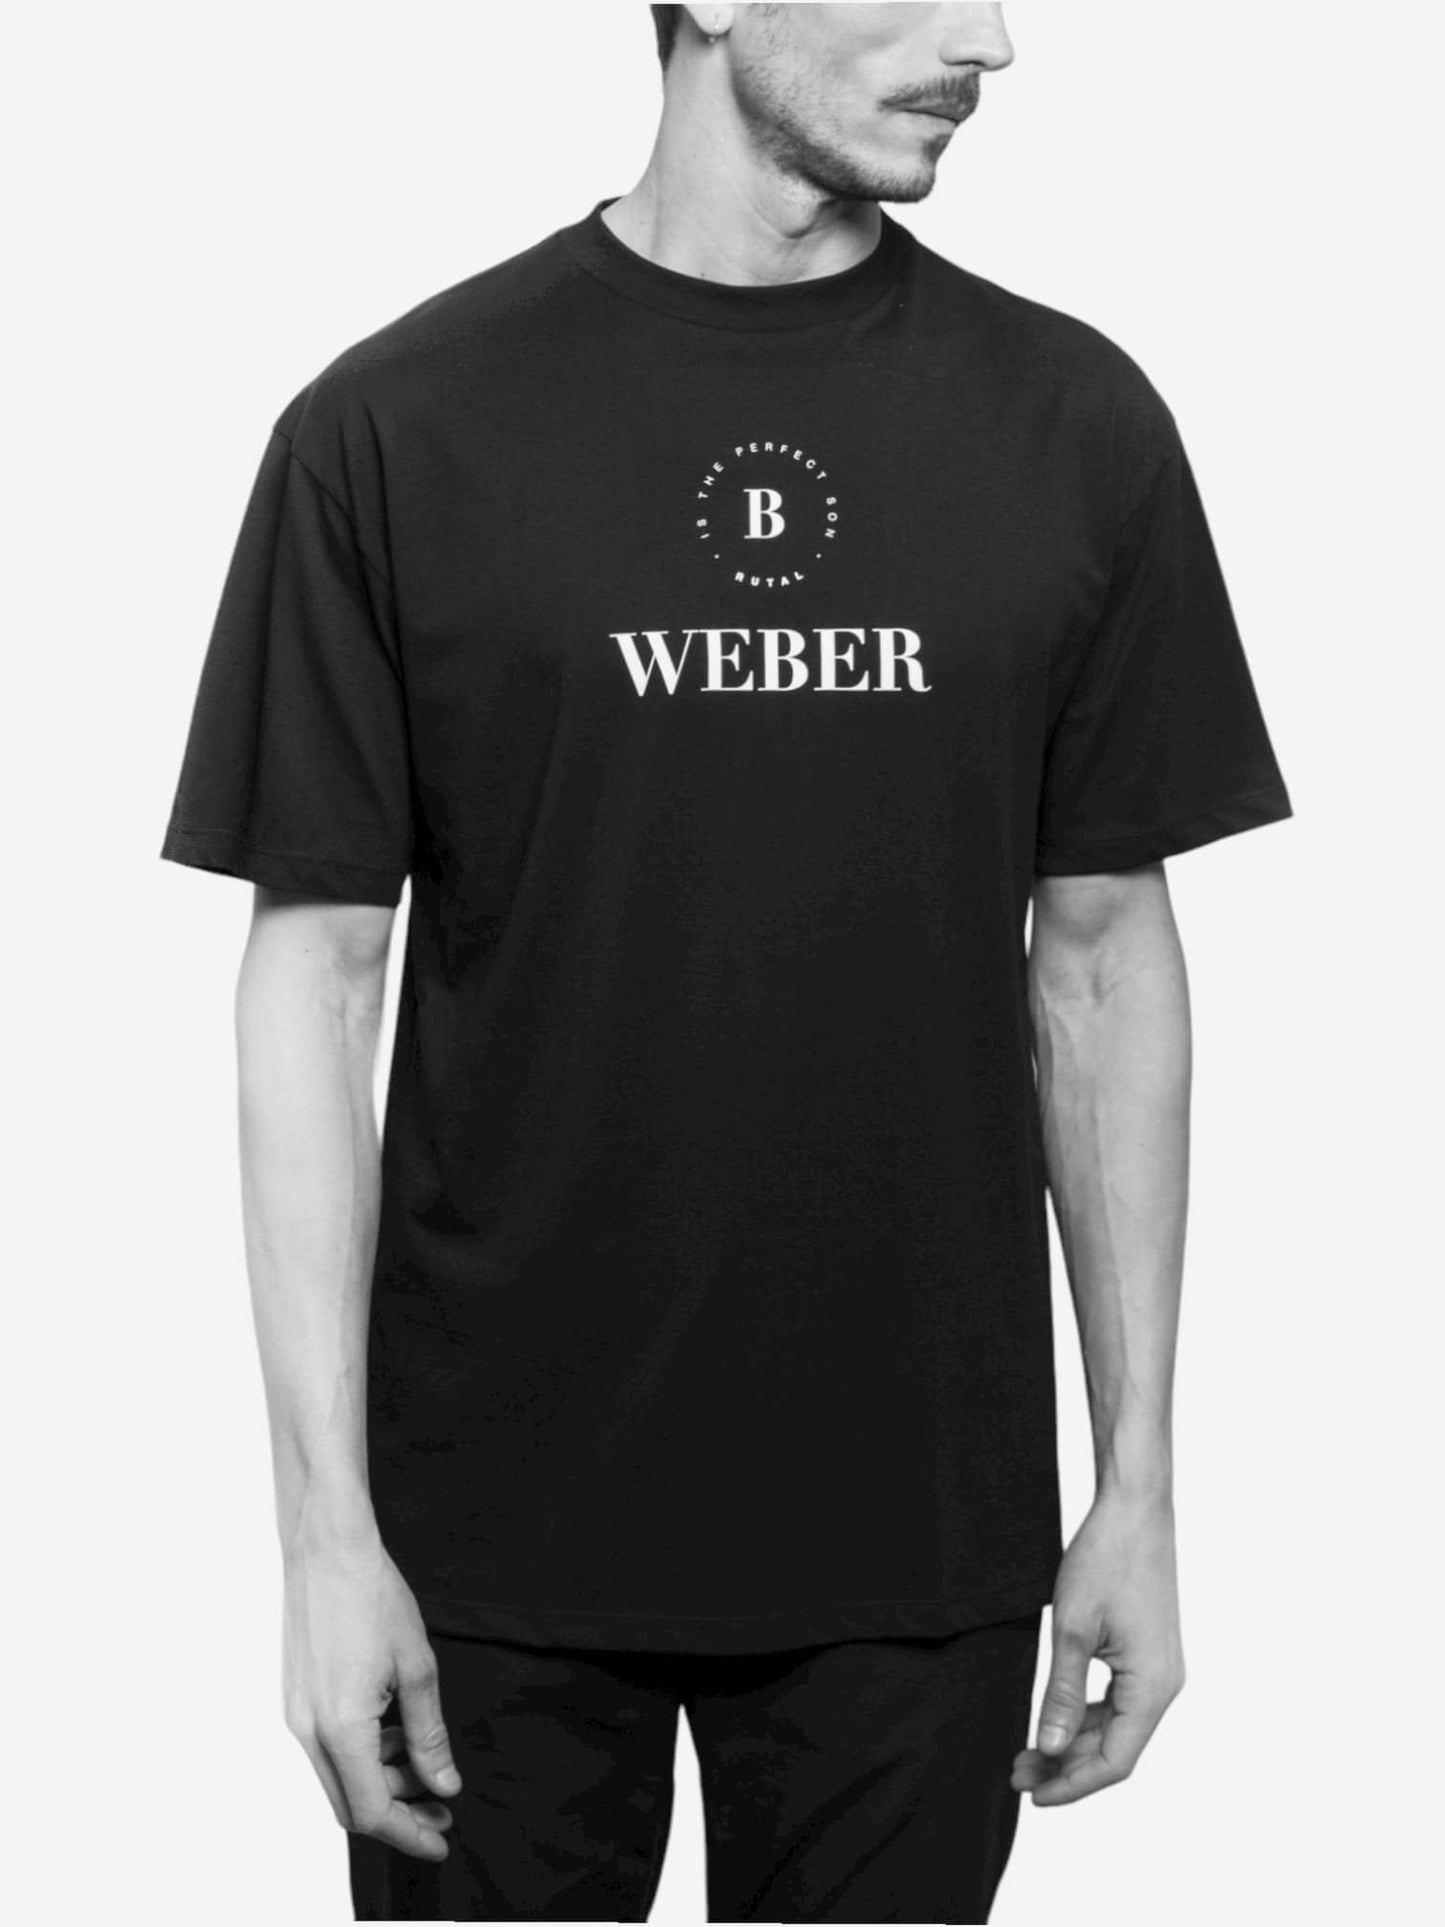 B. Weber T-shirt